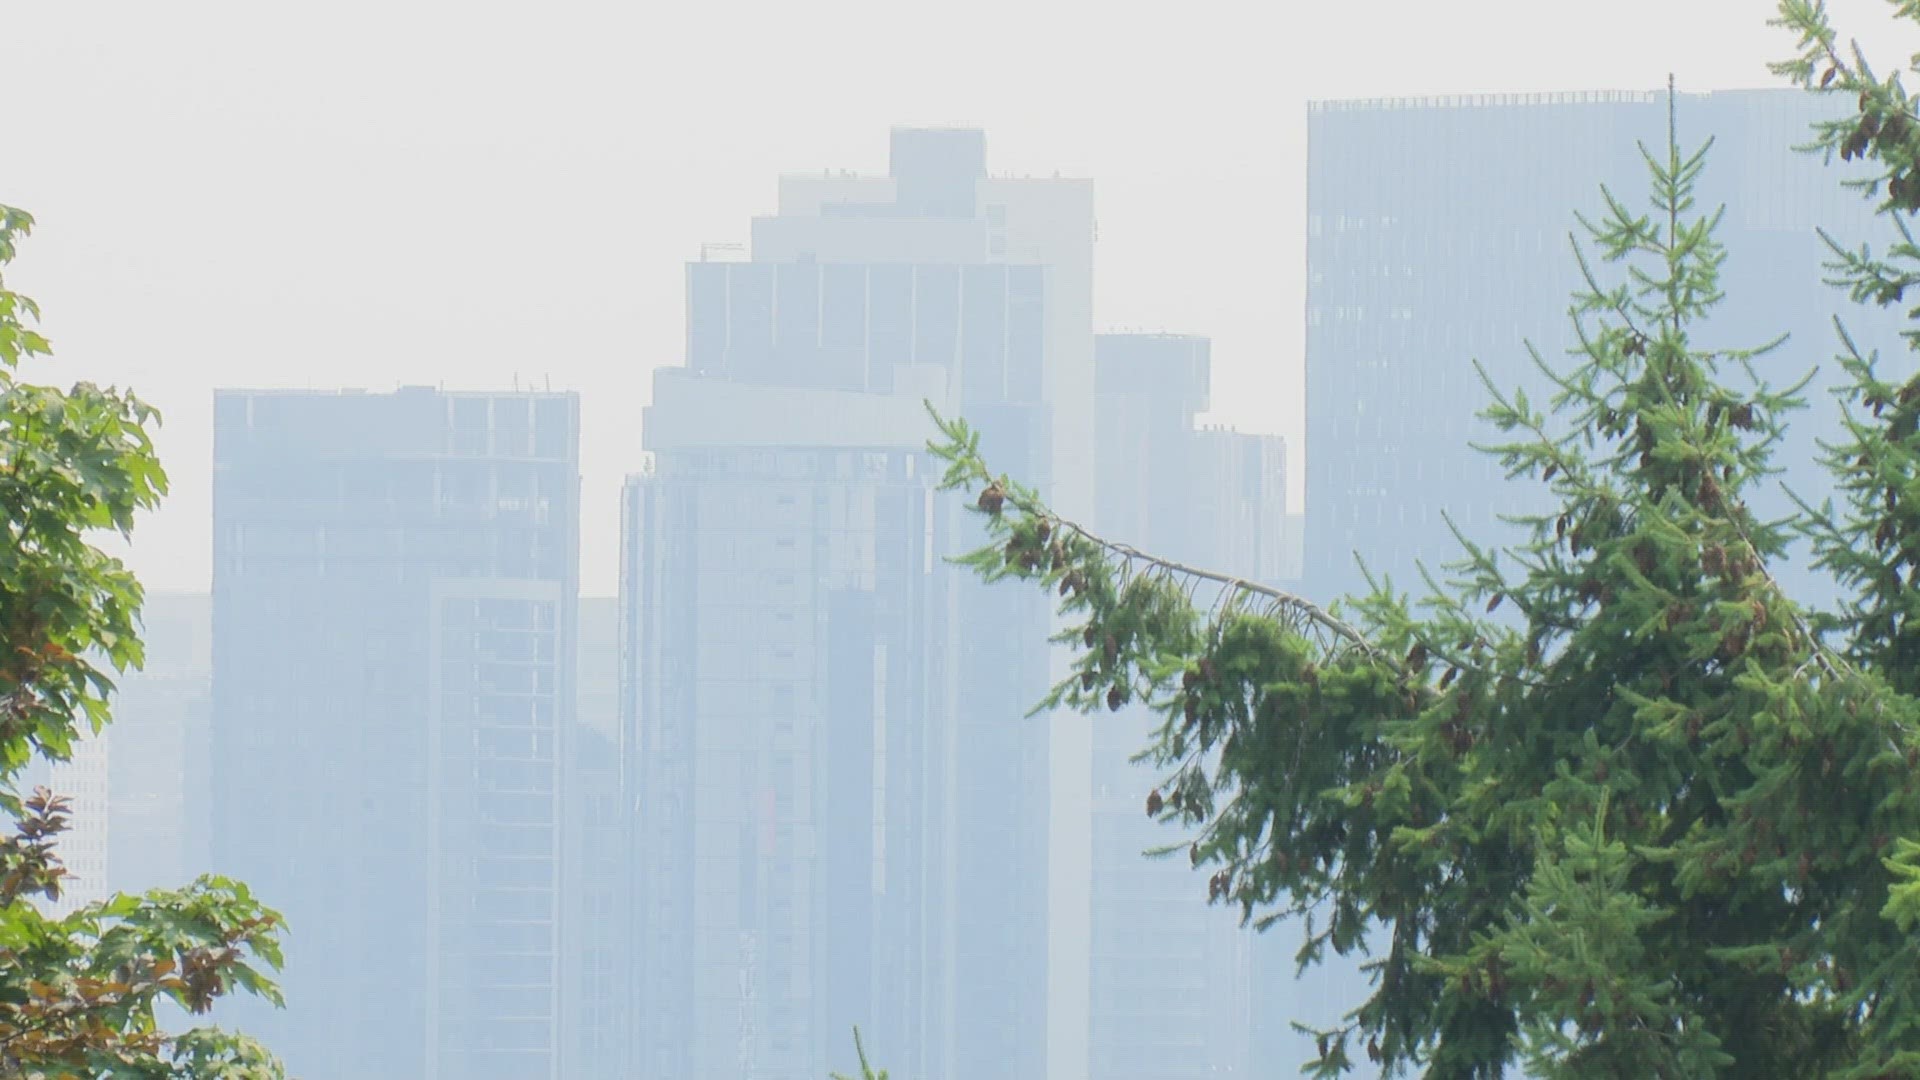 Some Seattleites went about their routine despite smoky skies.